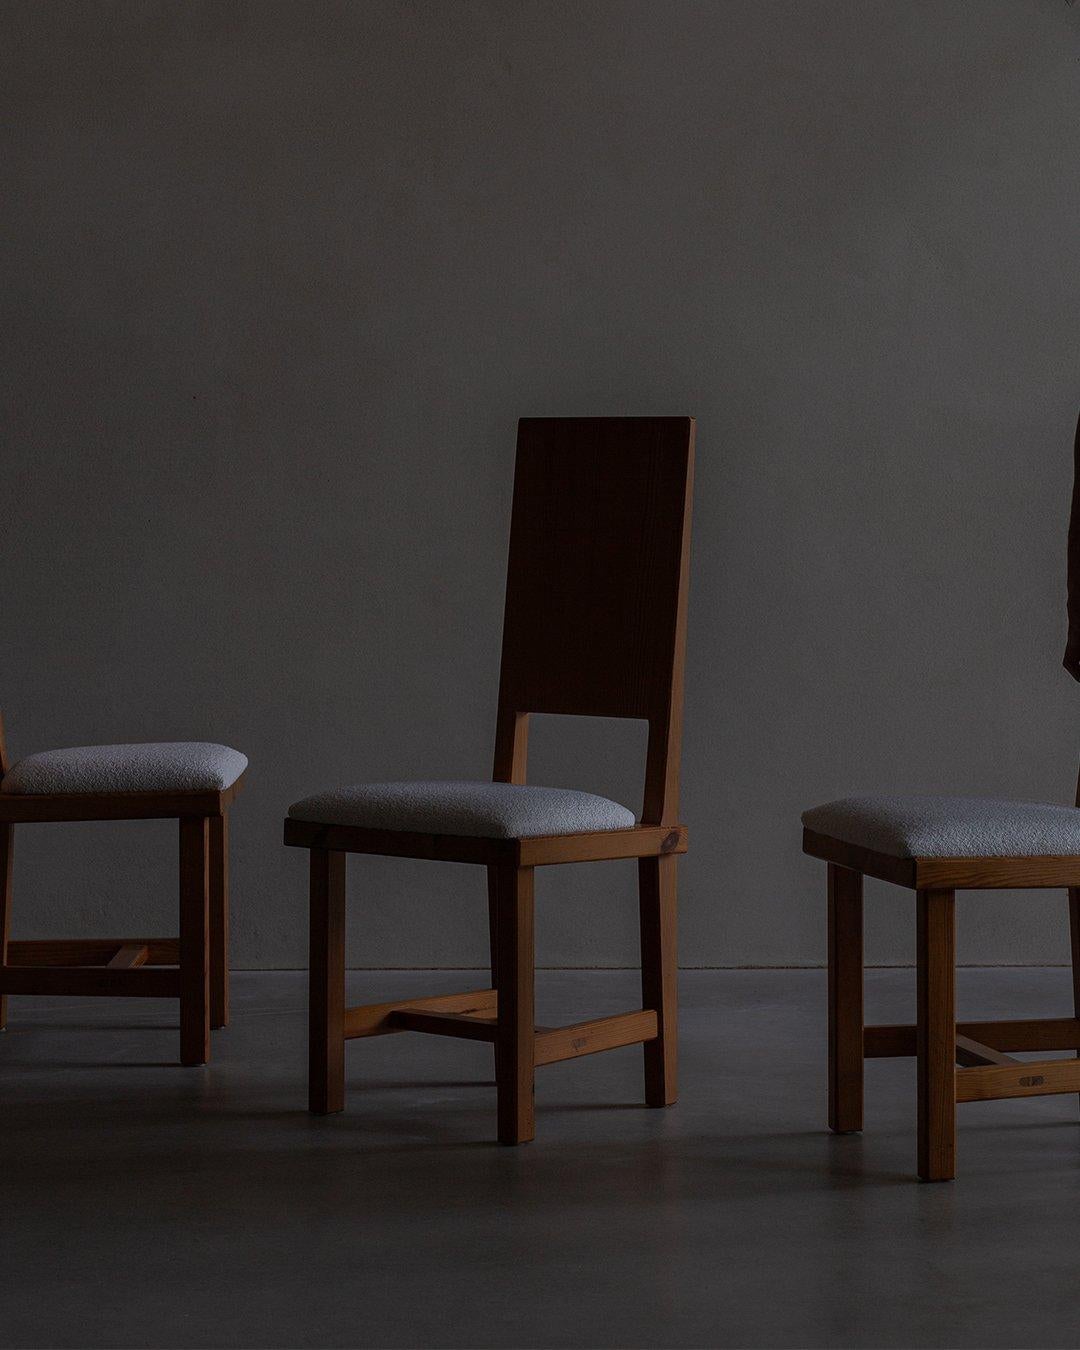 Juego de 4 sillas de comedor de Göran Malmvall, retapizadas con un bonito bouclé blanco roto. Göran Malmvall fue una figura destacada del diseño de muebles sueco (1917-2001), que estableció un influyente legado con sus icónicas sillas de pino,